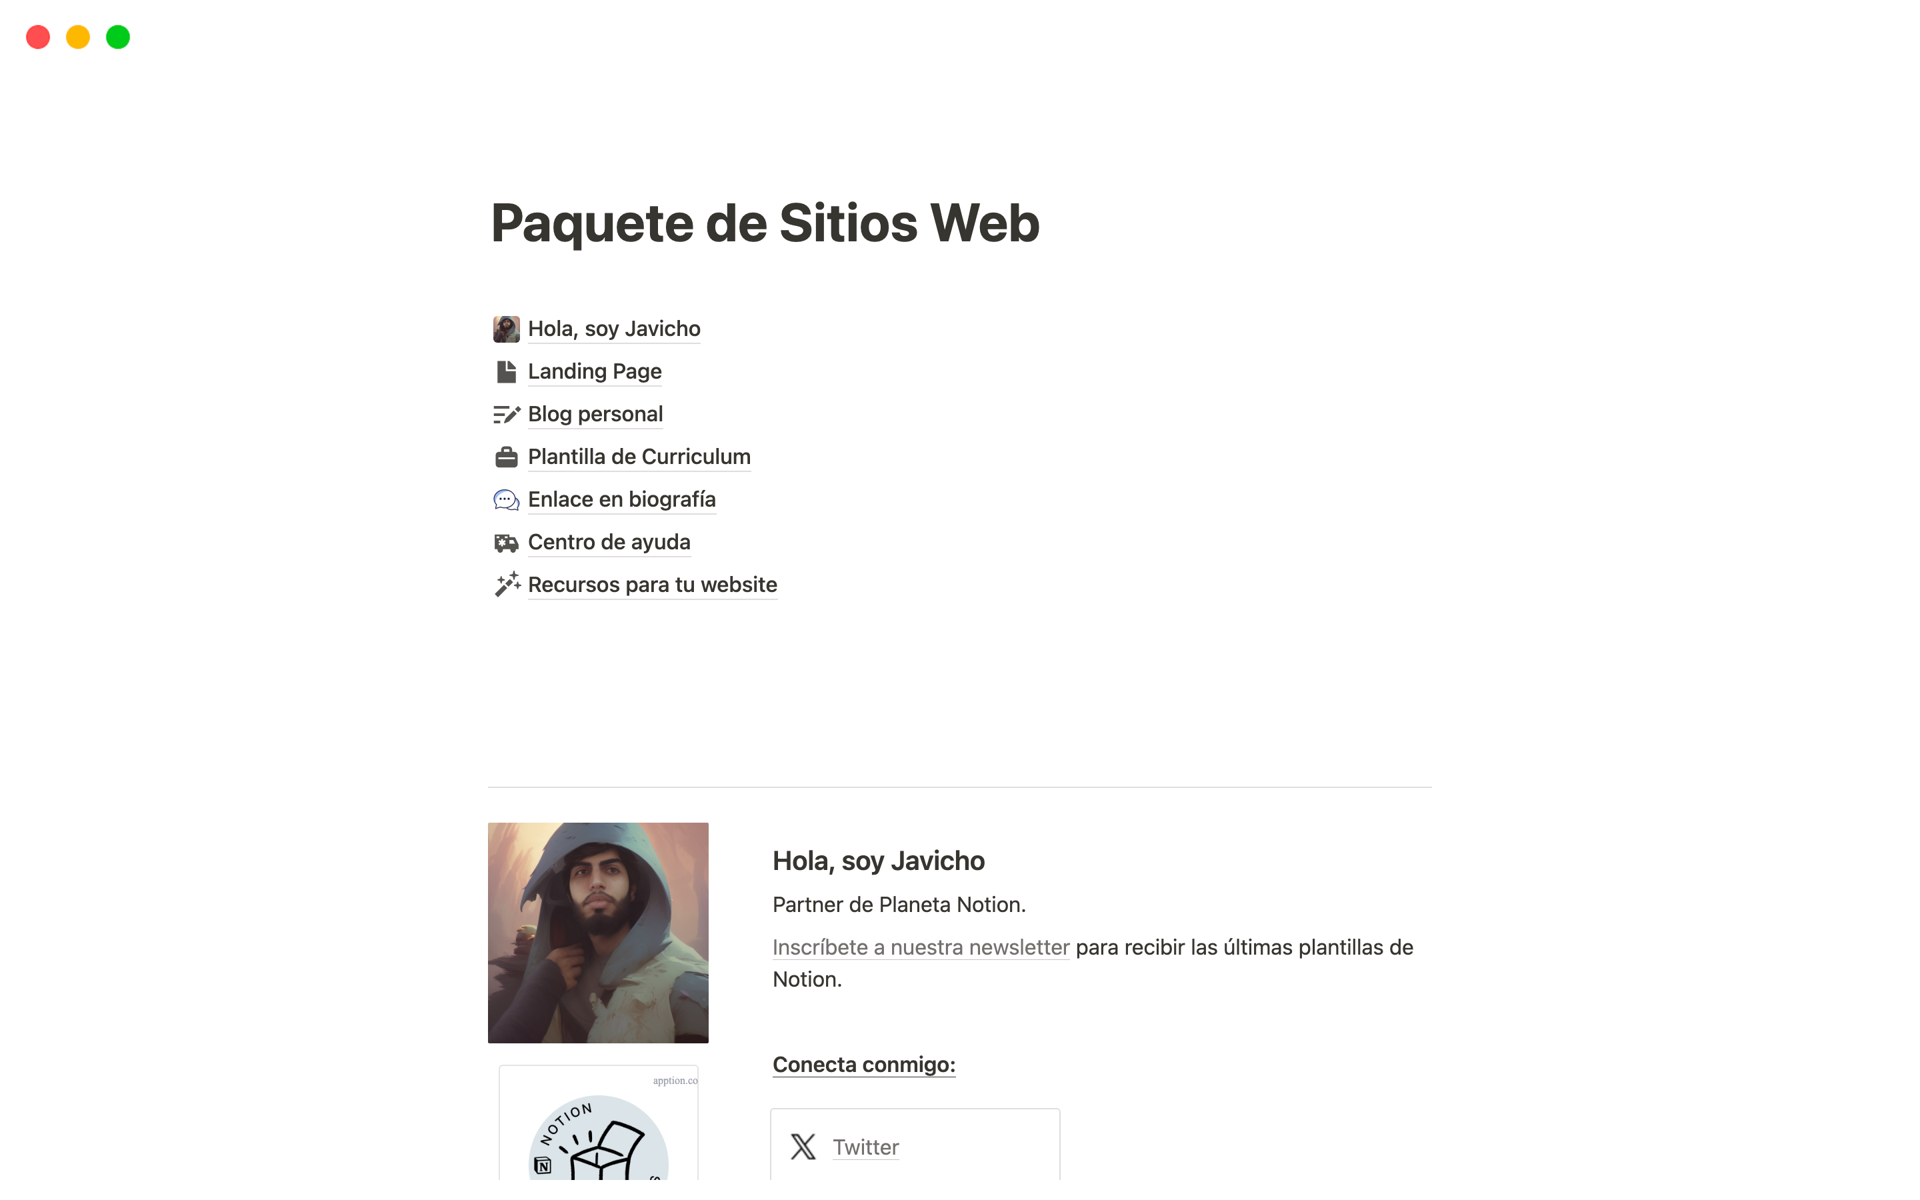 Vista previa de una plantilla para Paquete de Sitios Web